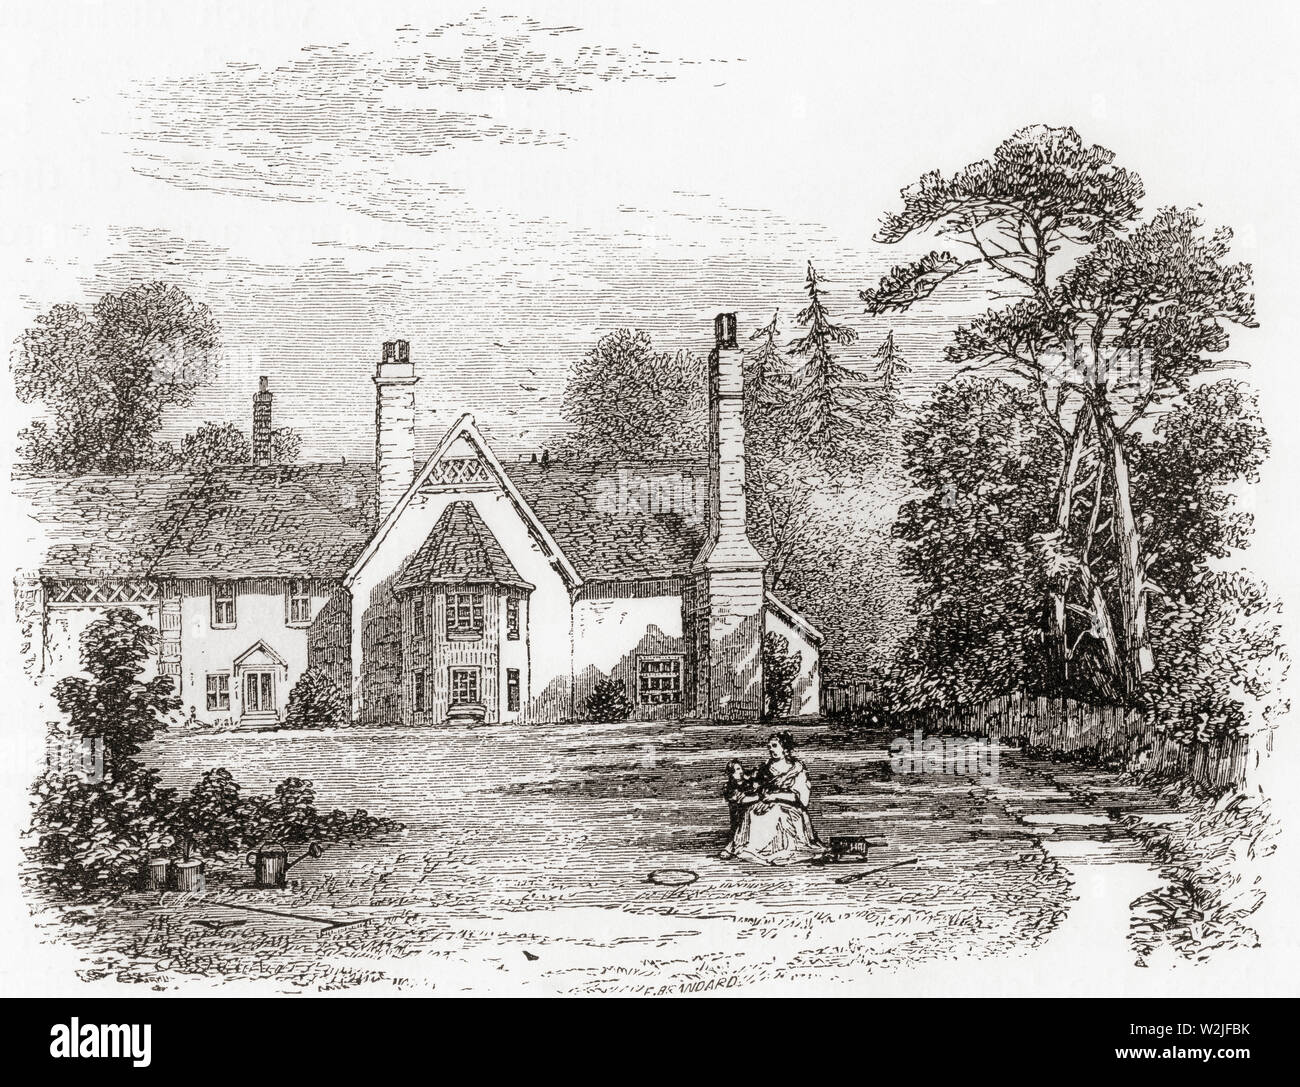 Der Geburtsort von Cowper, Pfarrhaus Berkhamsted, Hertfordshire, England, hier im 19. Jahrhundert. William Cowper, 1731 - 1800. Englischer Dichter und hymnodist. Aus dem Englischen Bilder, veröffentlicht 1890. Stockfoto